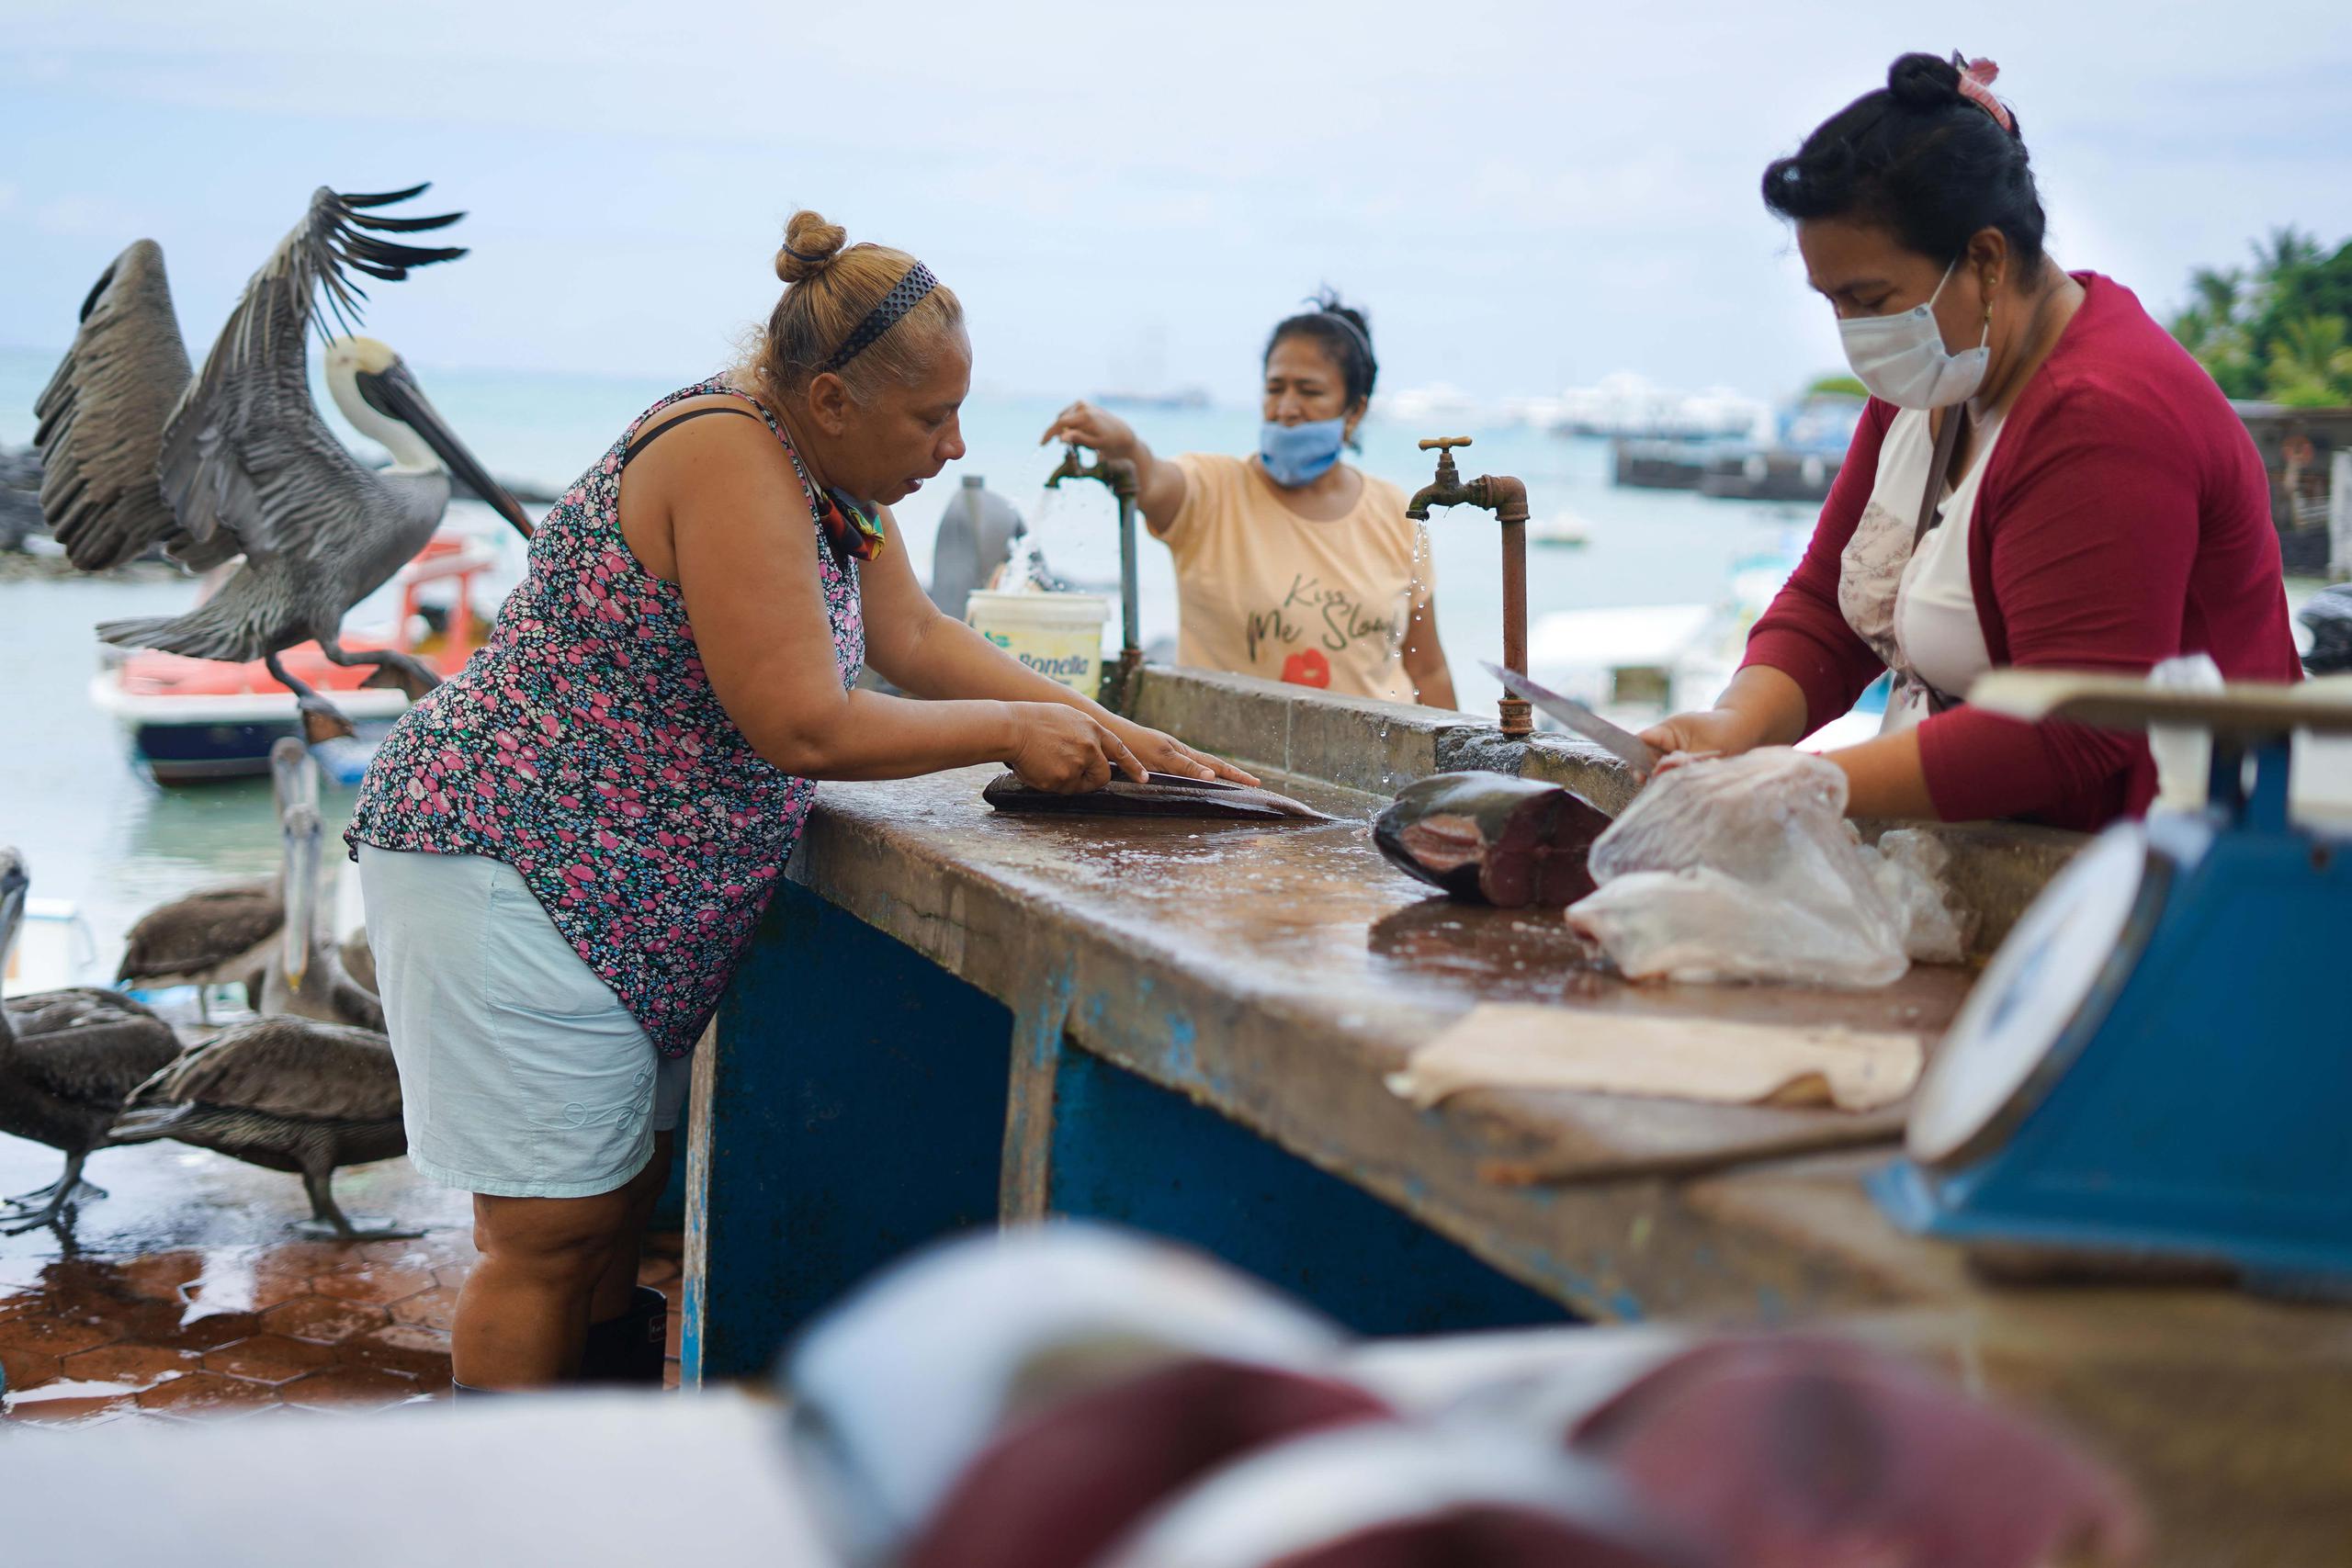 El archipiélago ecuatoriano de Galápagos, espacio de biodiversidad y modelo de conservación, se ha convertido en un ejemplo mundial del desarrollo de sistemas de alimentos de mar con una línea de inversión responsable y mayor rentabilidad para las pesquerías costeras. EFE/ Fundación Charles Darwin /Juan Manuel García.